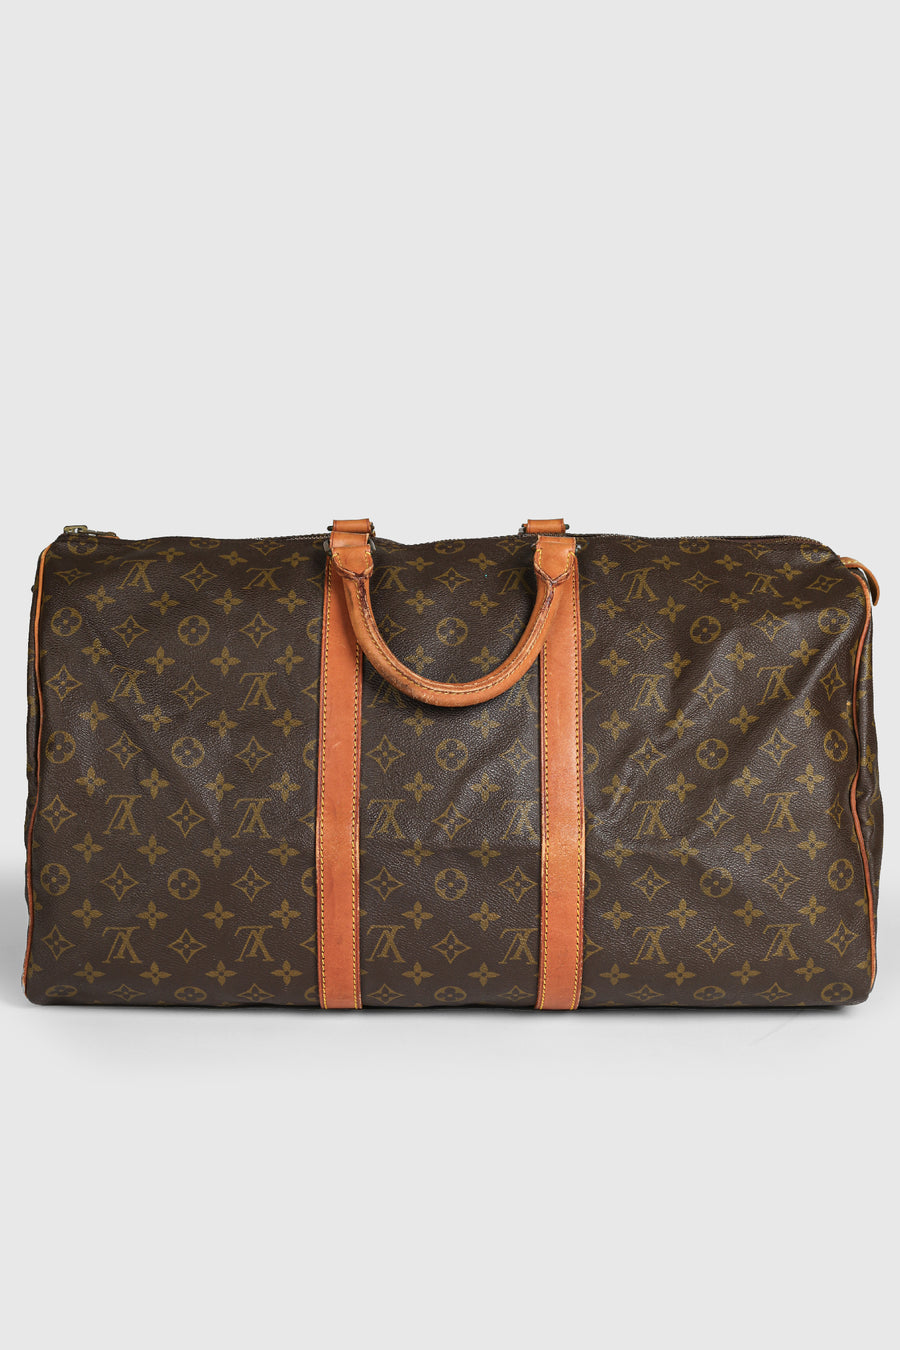 Vintage Louis Vuitton Designer Duffel Bag